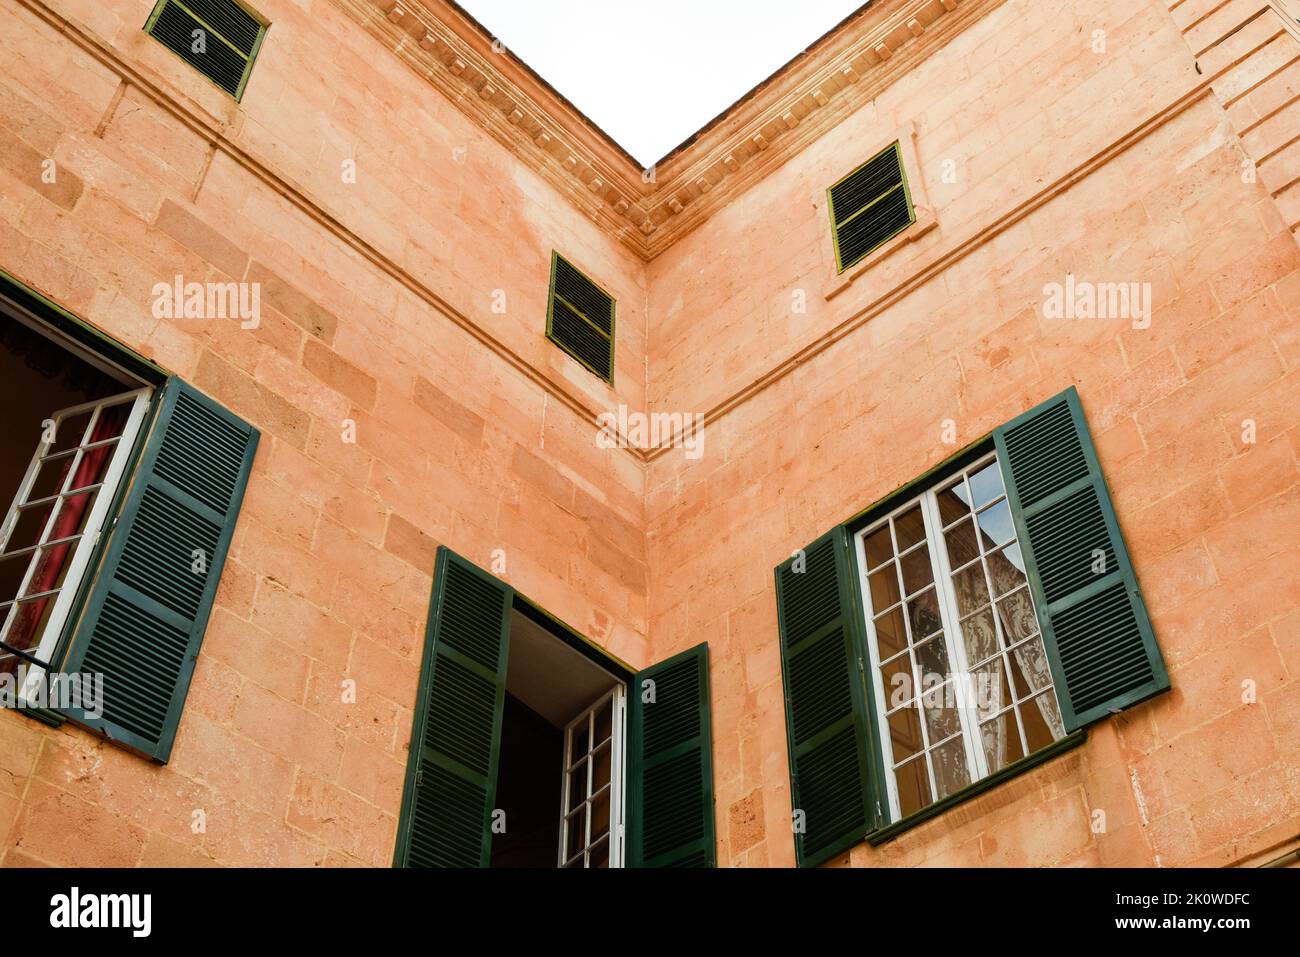 Resumen del exterior del edificio con detalles arquitectónicos y ventanas con persianas Foto de stock